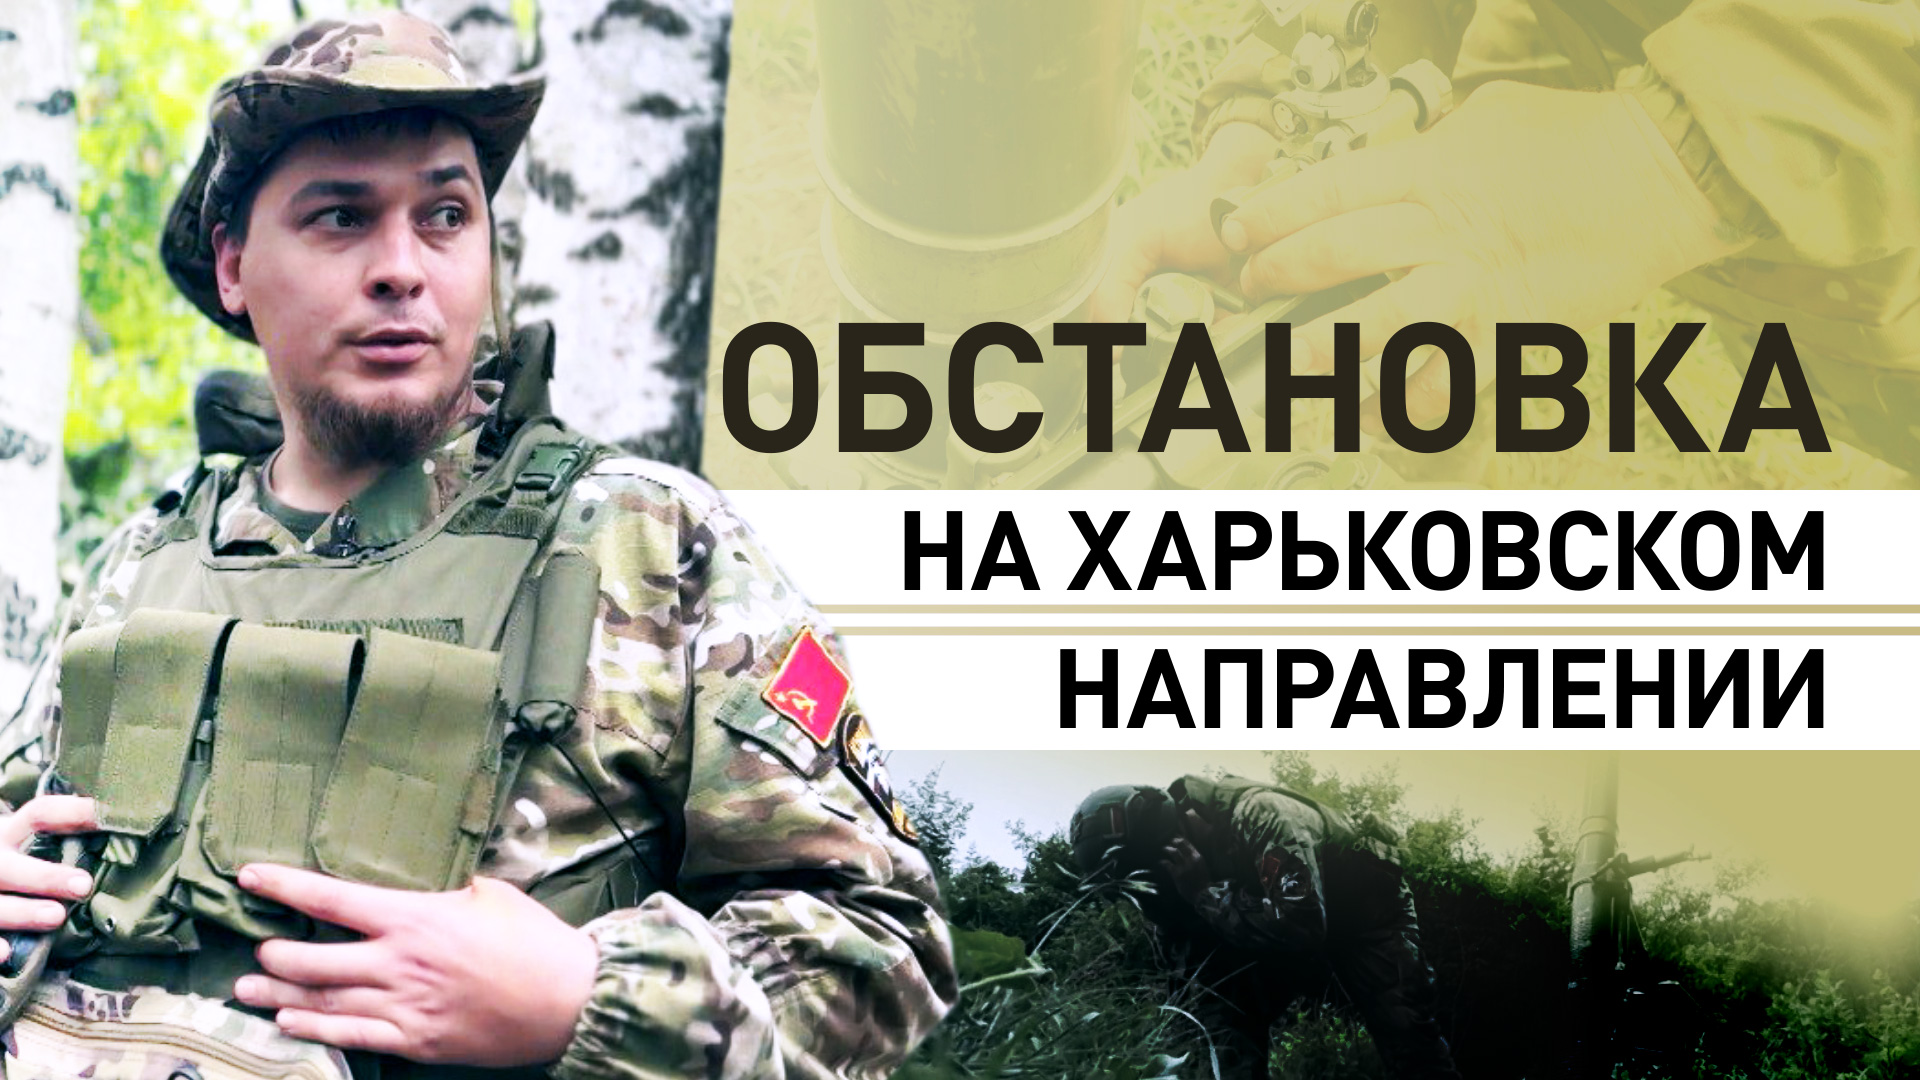 Одна линия пехоты до позиций ВСУ: артиллеристы спецназа «Ахмат» — о ситуации на границе с Украиной